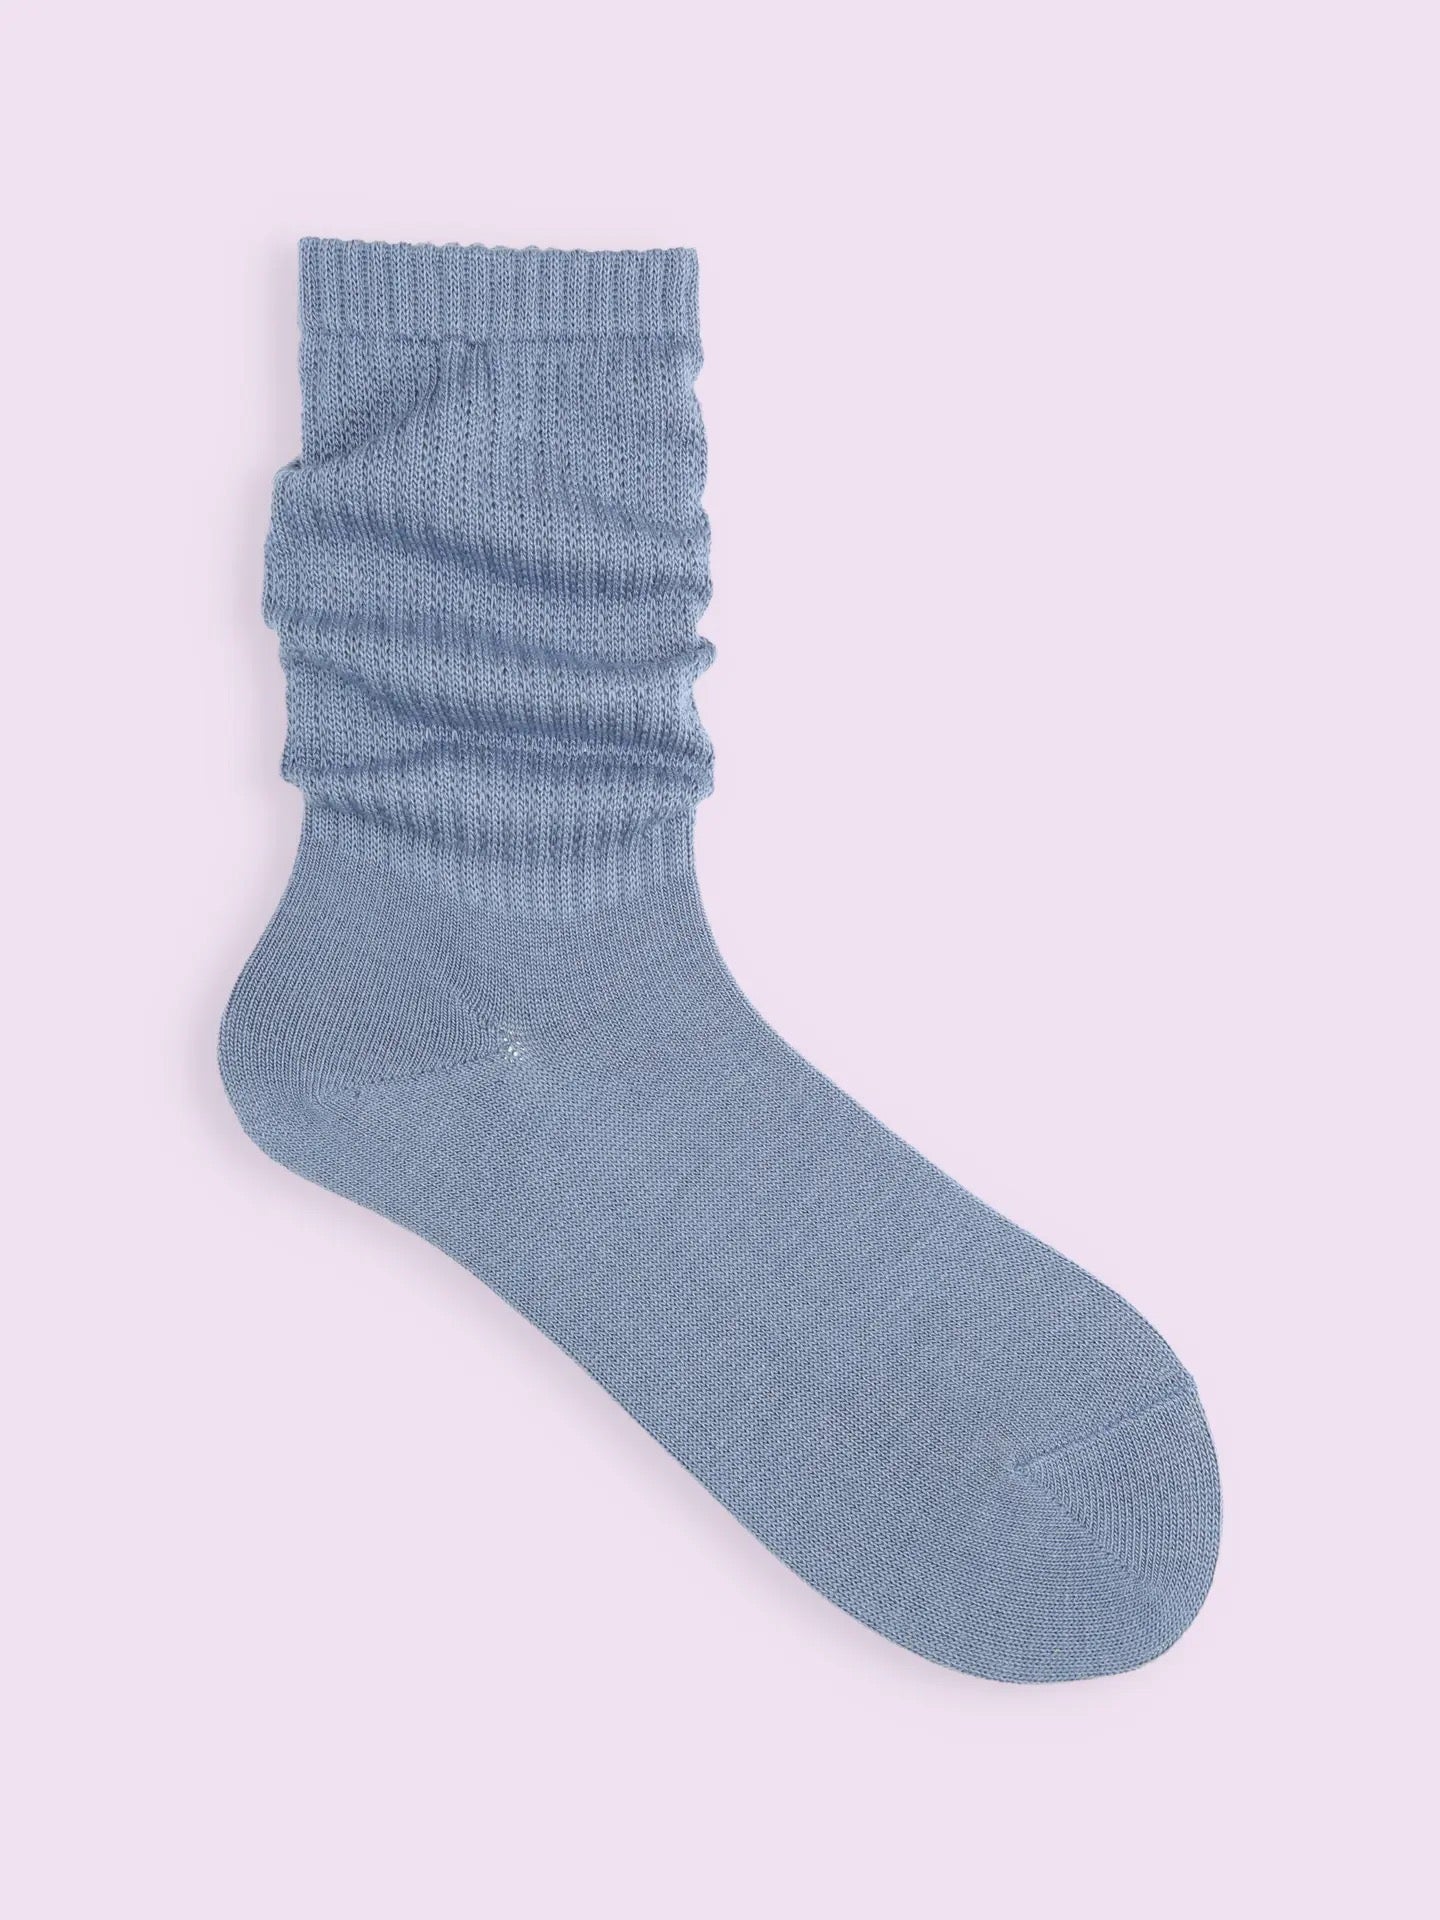 靴下屋Tabio宽松柔软毛混纯色短筒袜堆堆袜 8色选